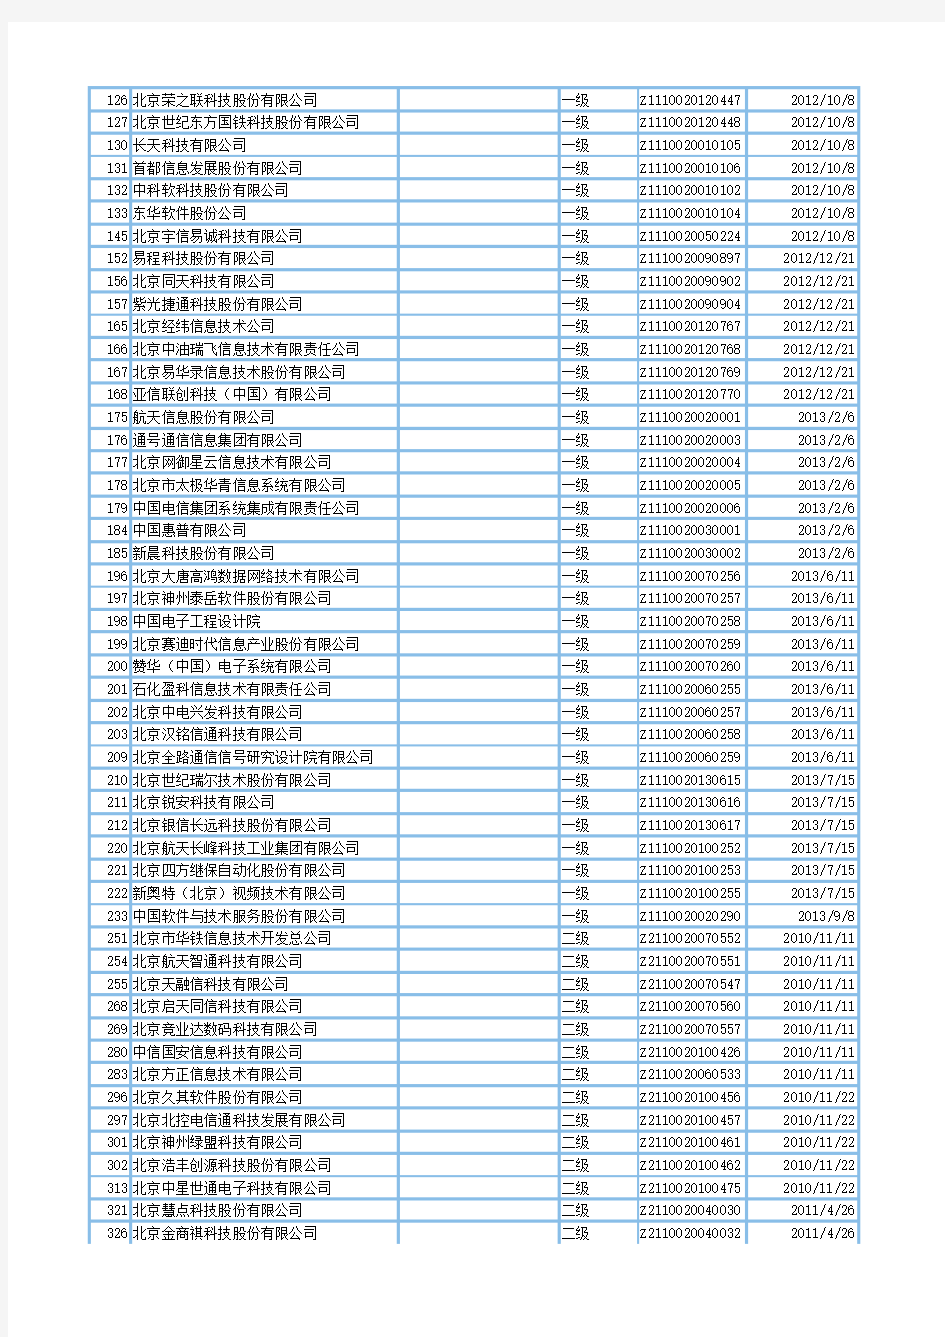 中国系统集成商名单大全(4603家)